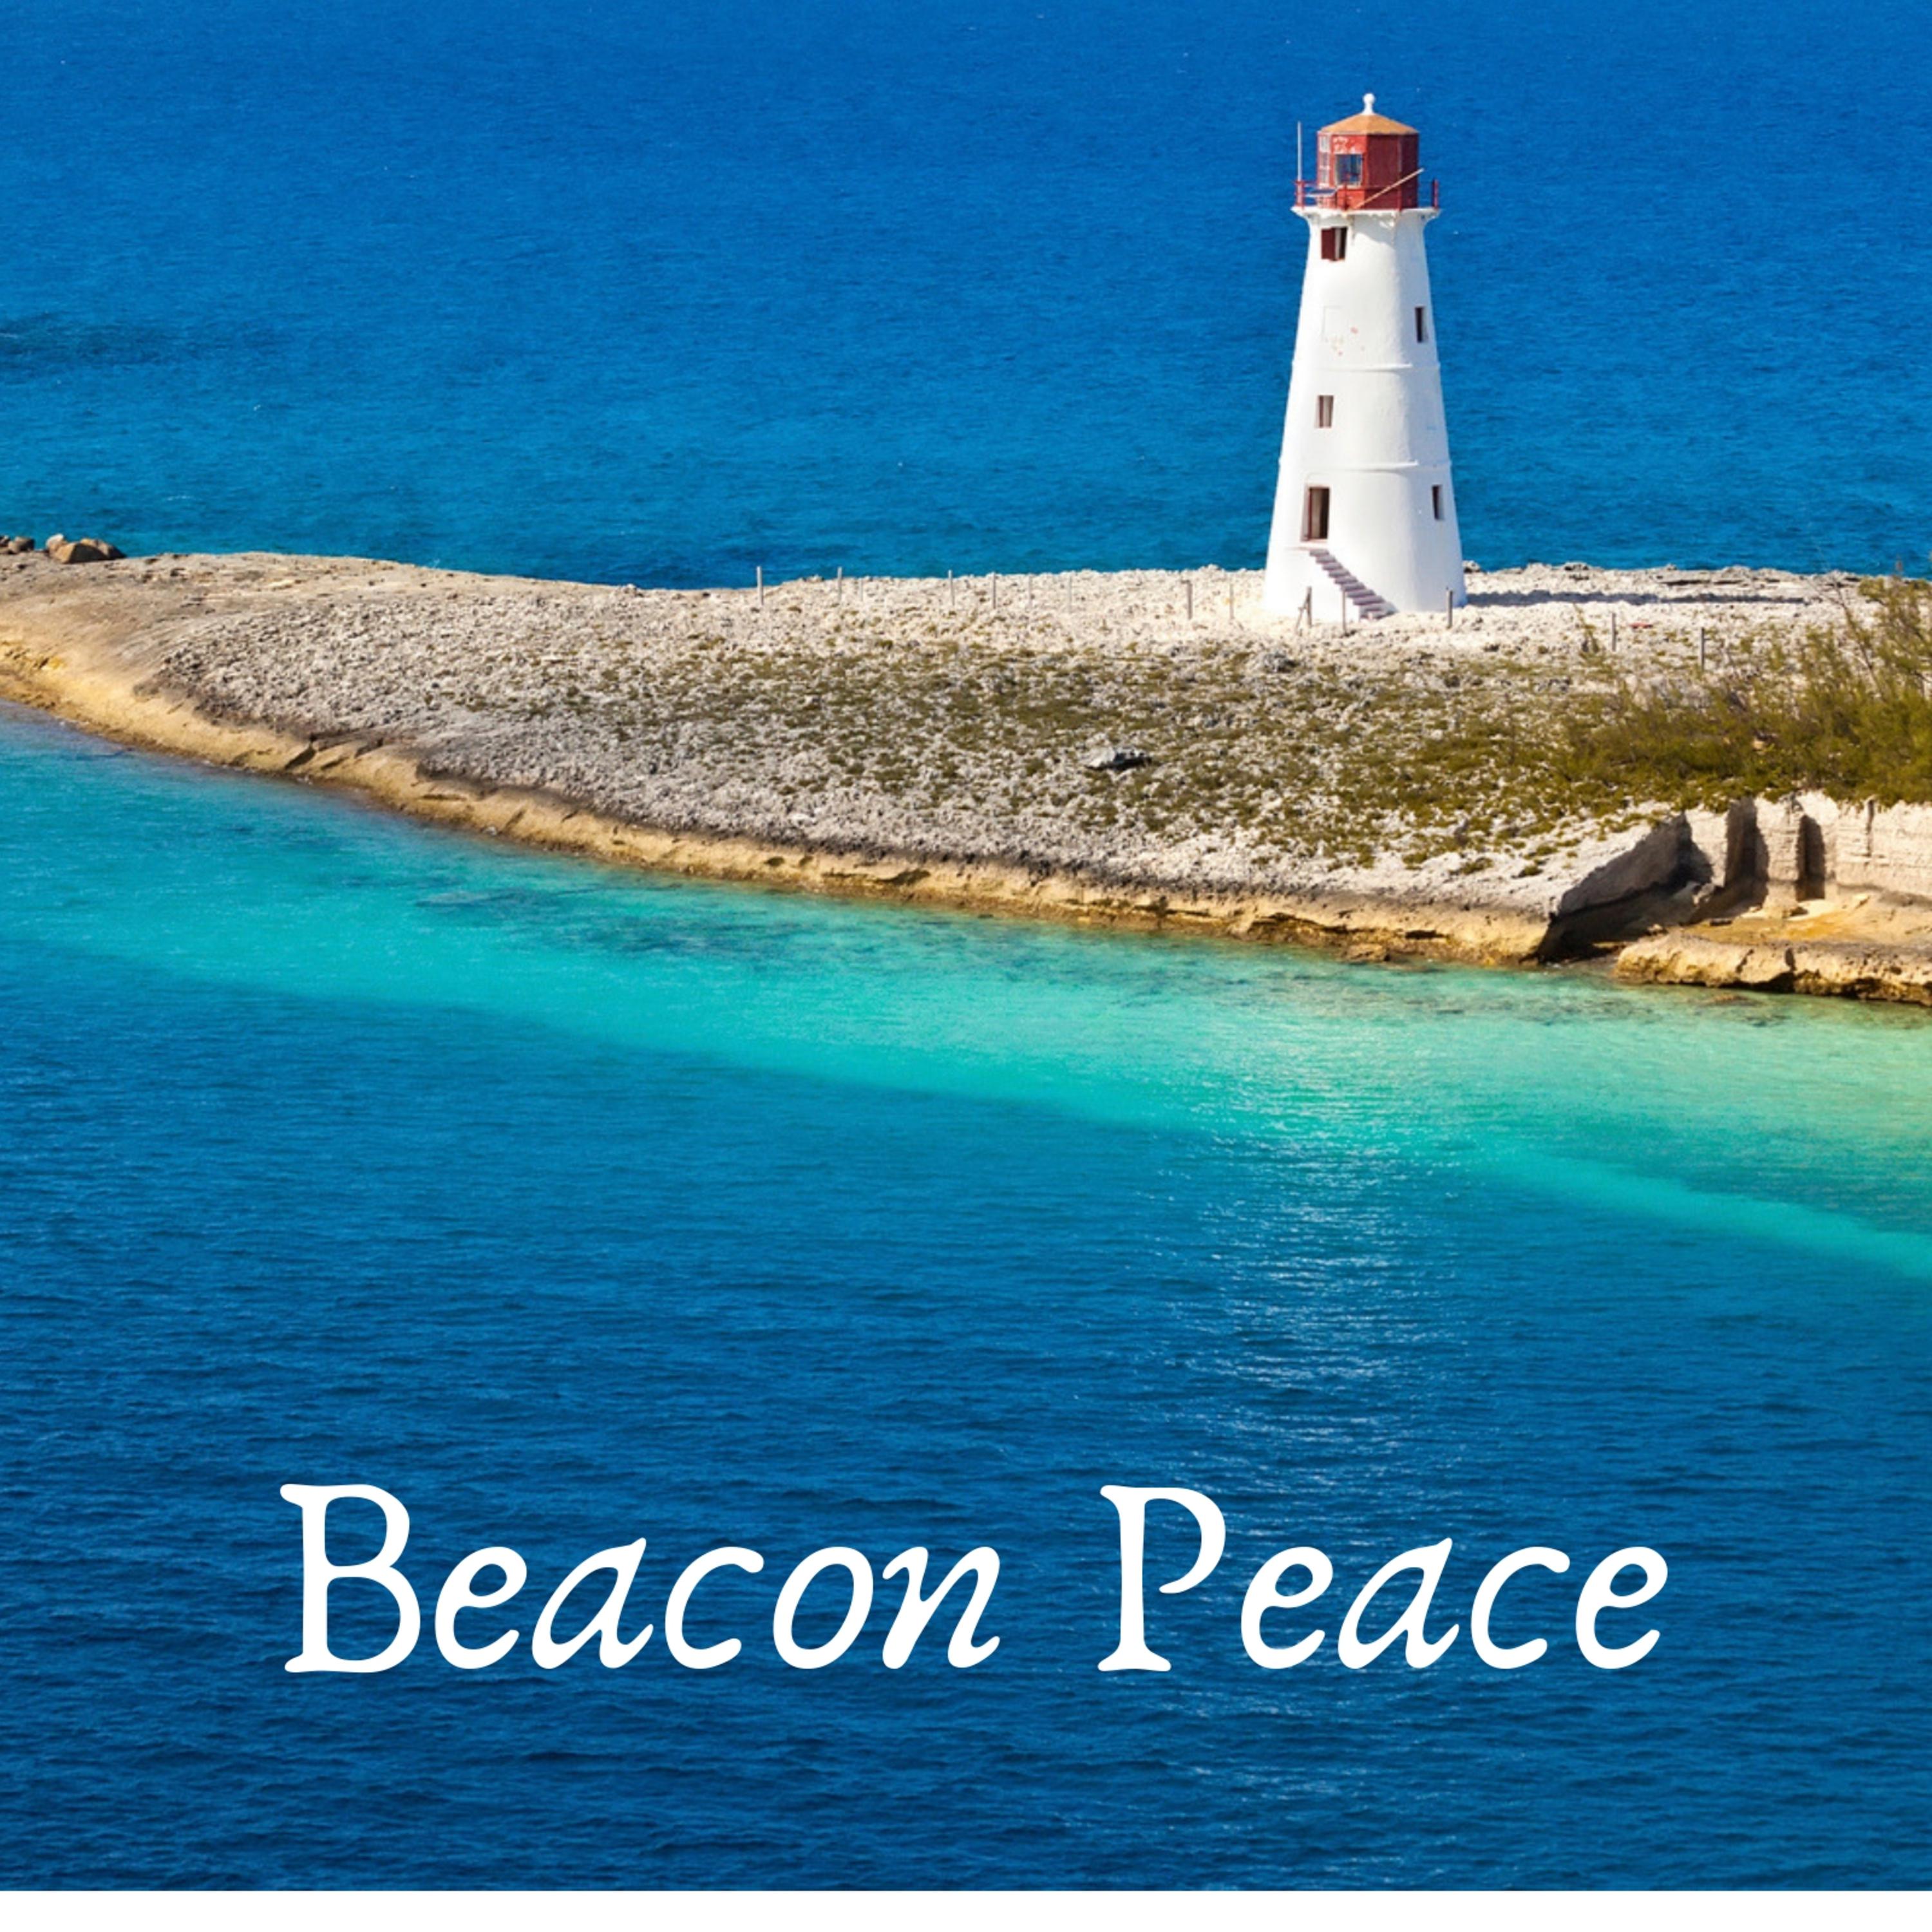 Beacon Peace